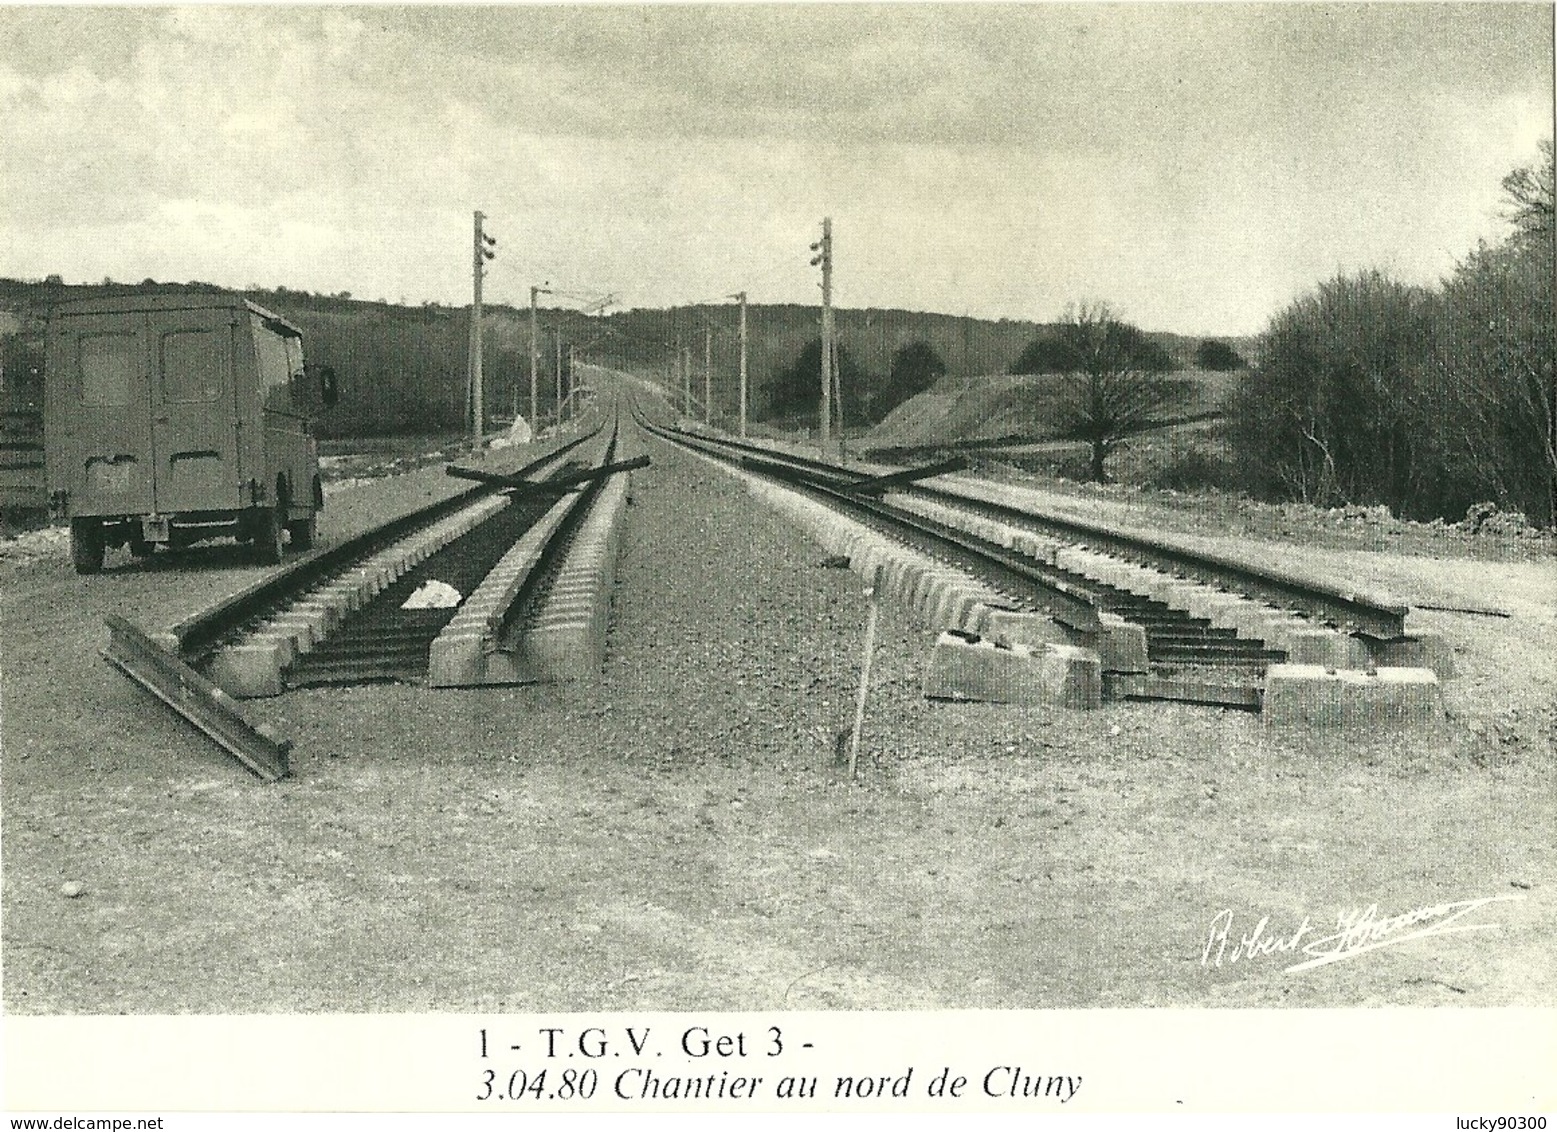 CHANTIER VOIE FERRÉE TGV - CONSTRUCTION CHEMIN DE FER ET PONT - SECTEUR CLUNY RN 79  - AVRIL 1980 - RARE 600 EXEMPLAIRES - Structures